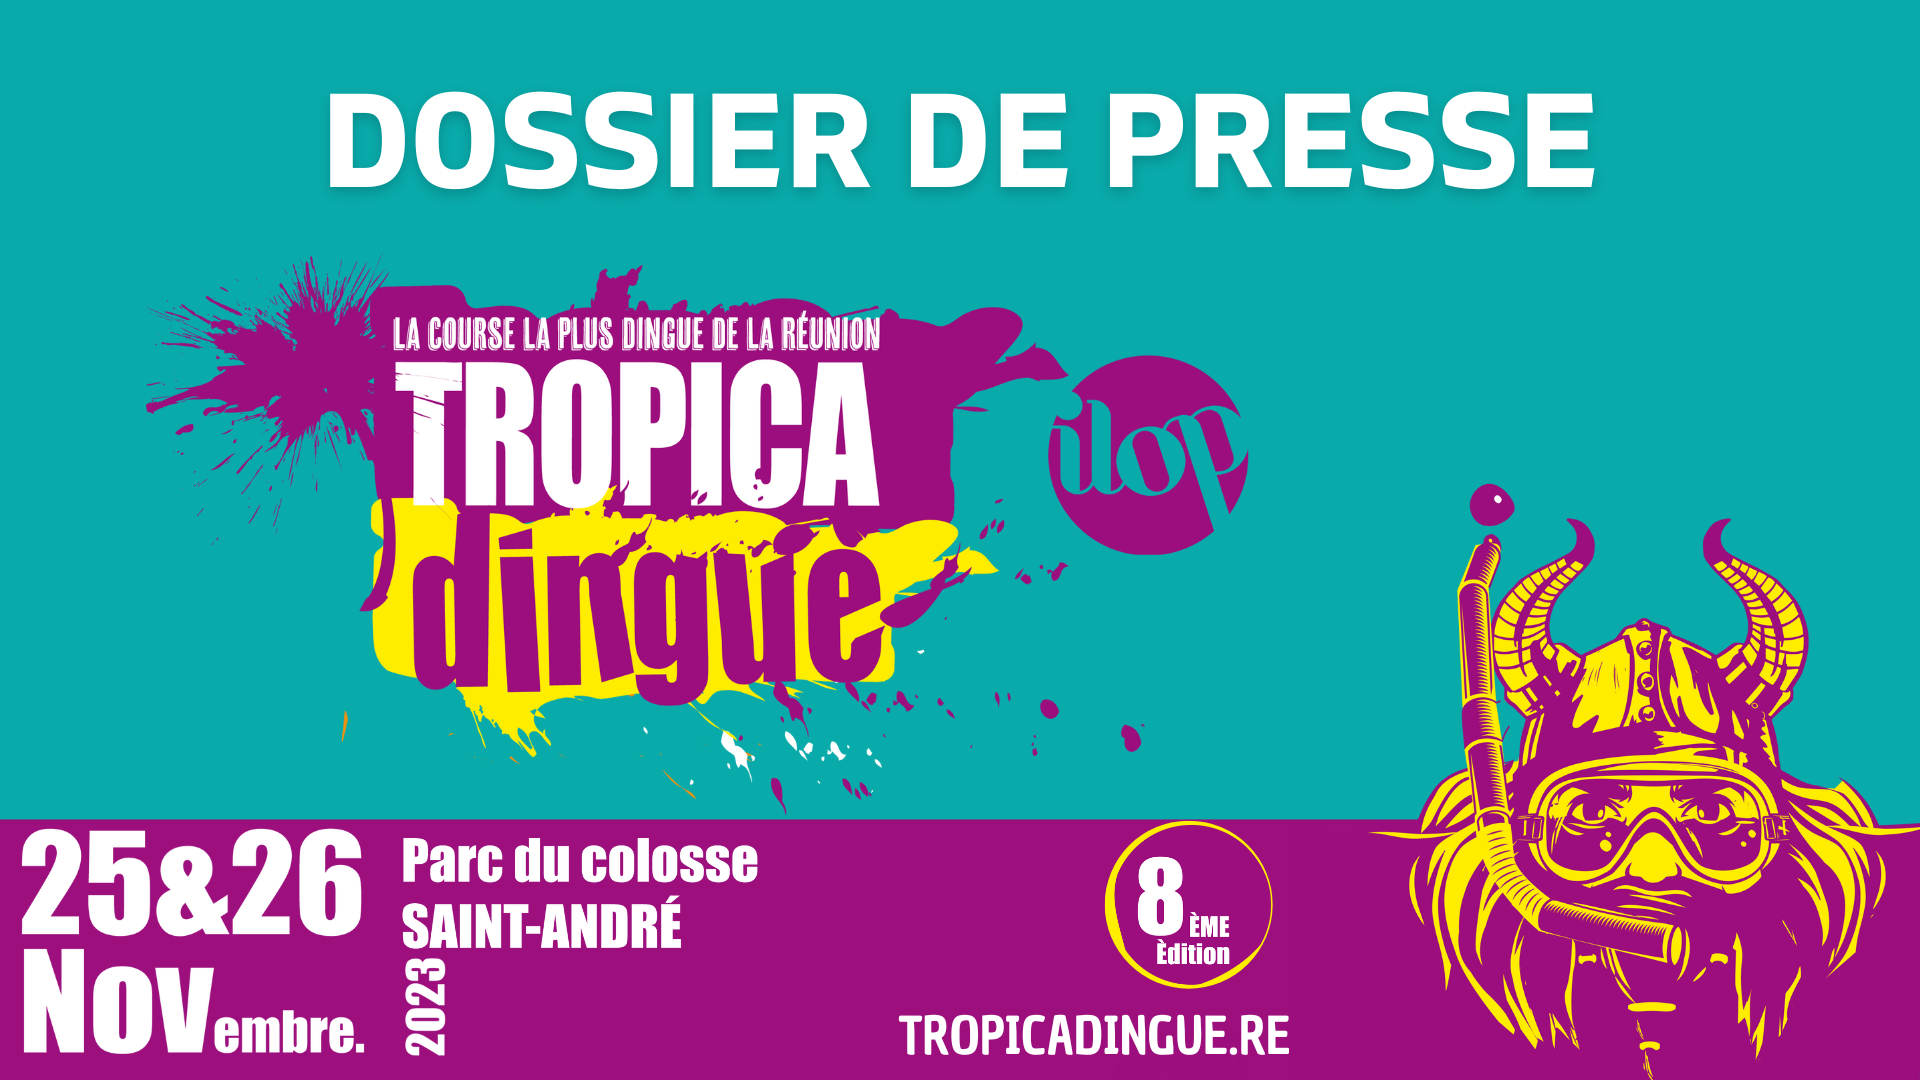 DOSSIER DE PRESSE TROPICA'DINGUE 2023